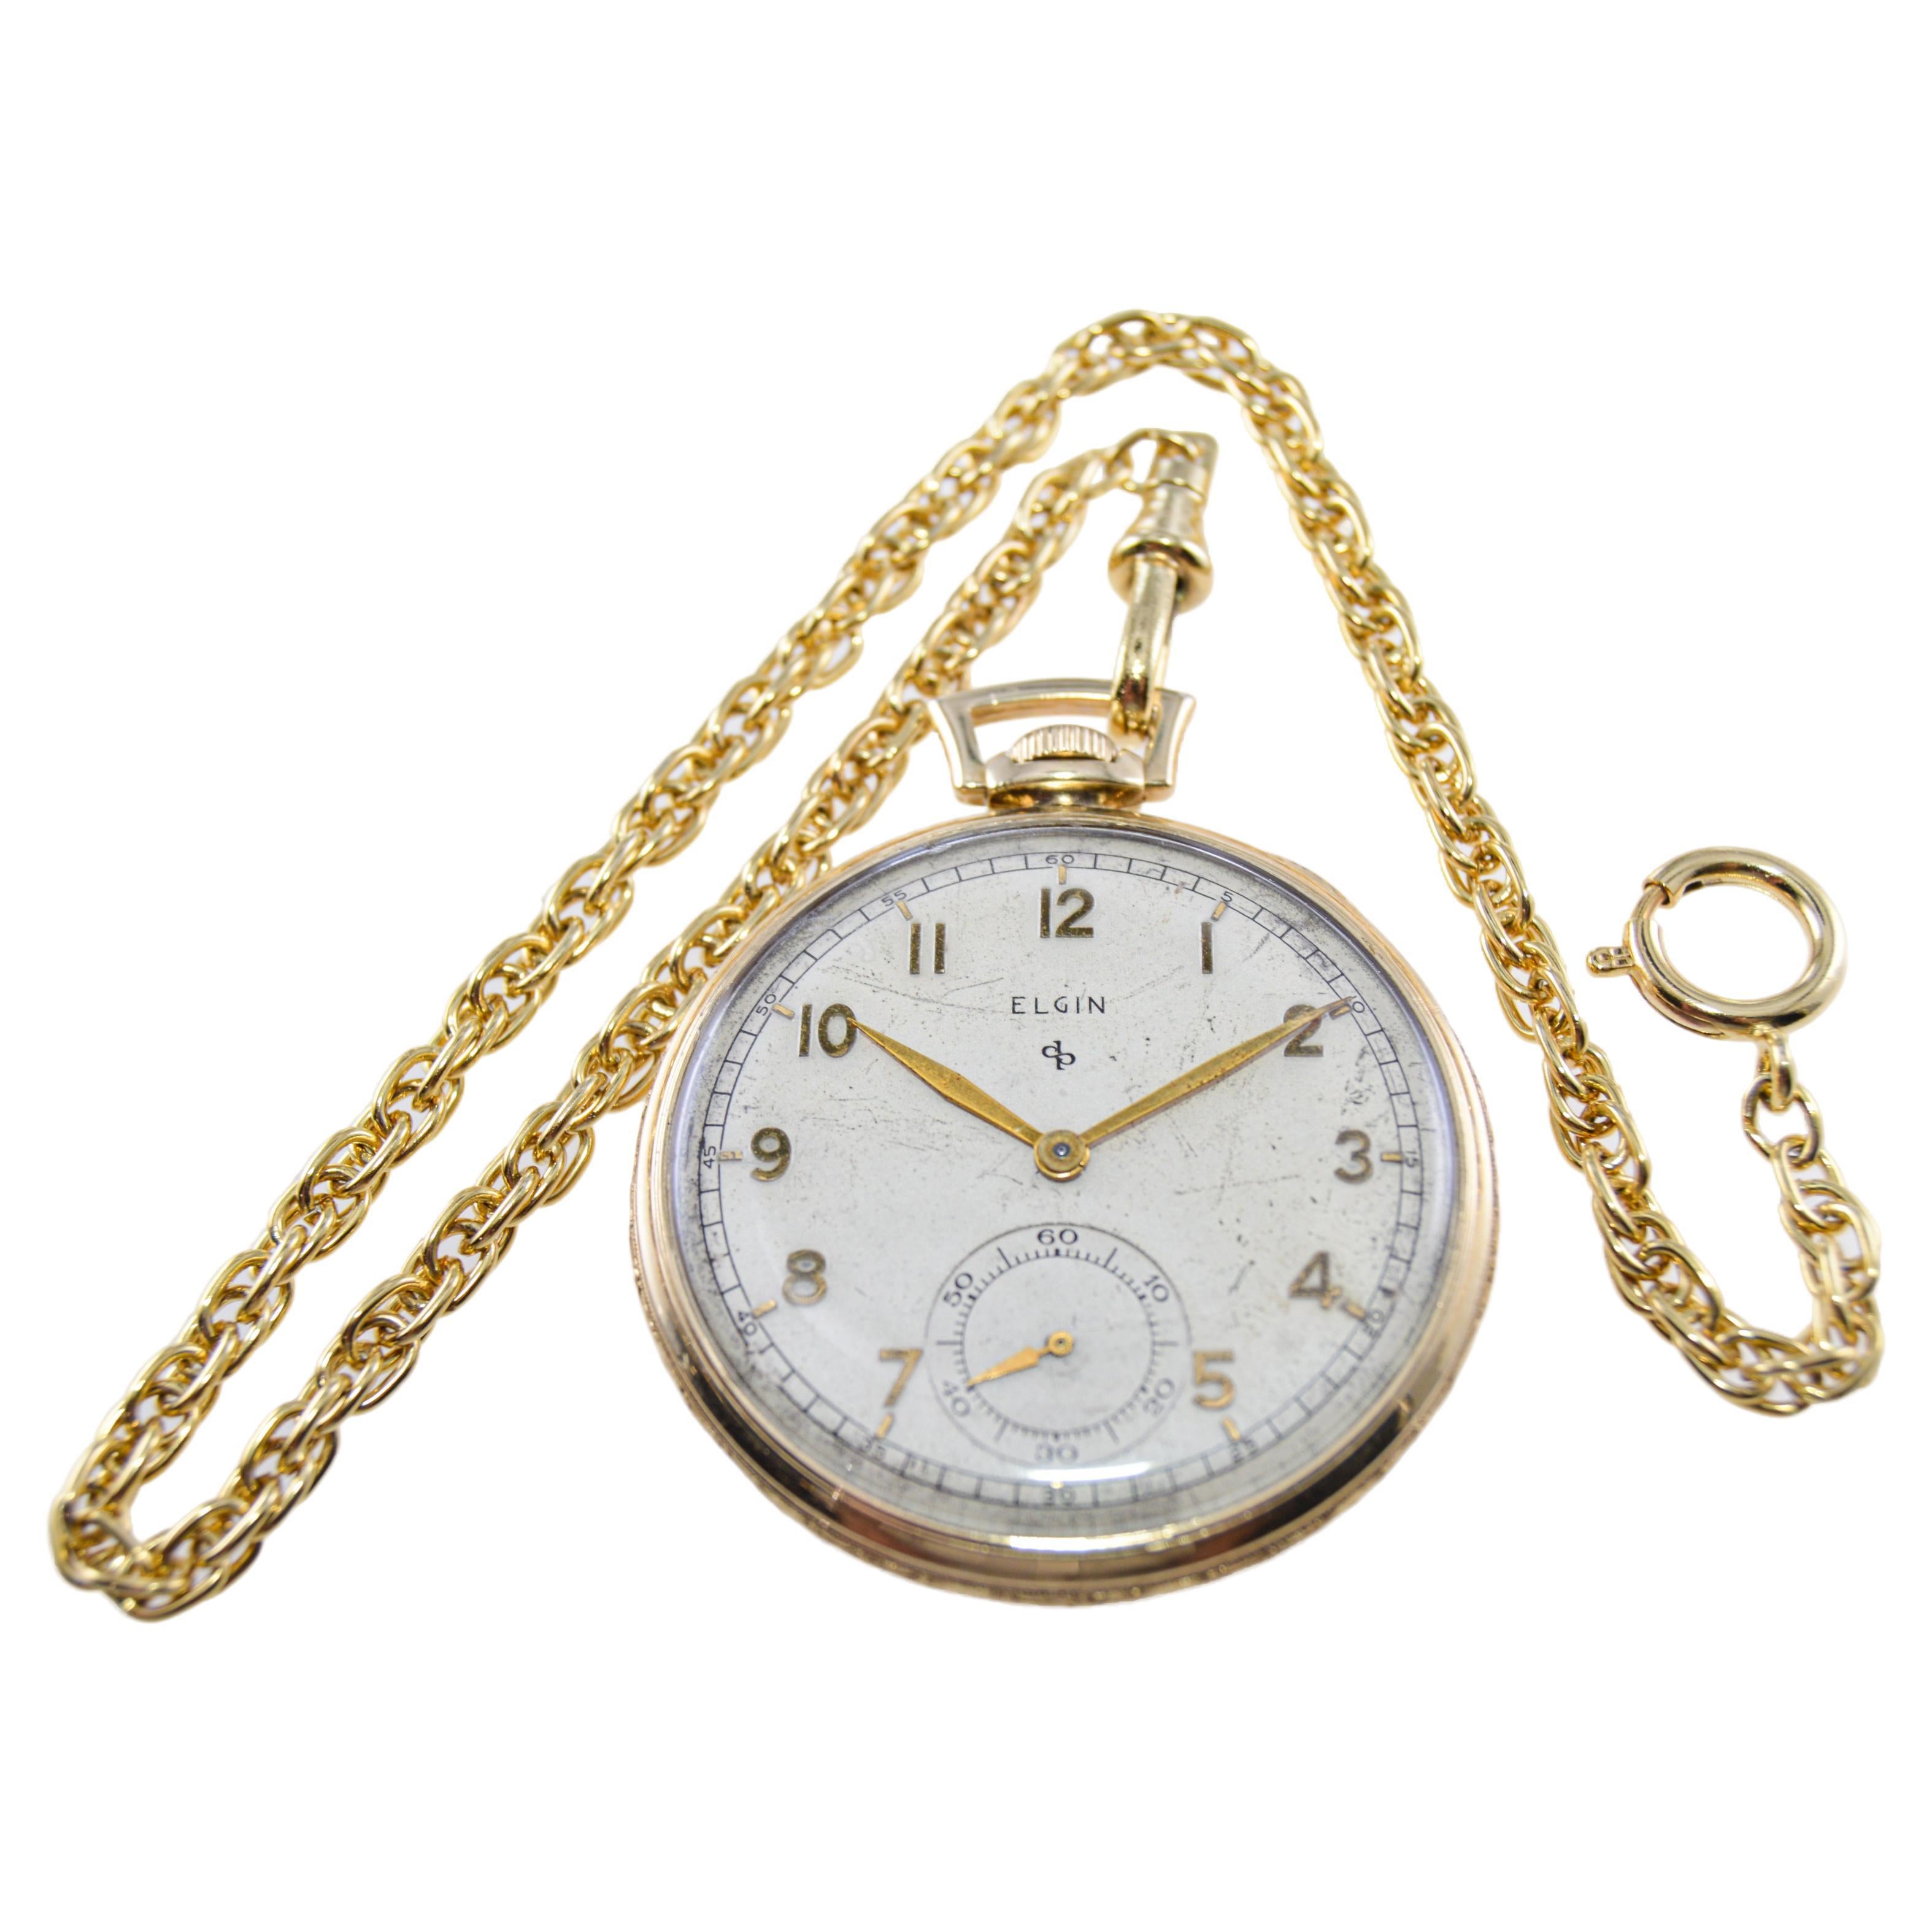 FABRIK / HAUS: Elgin Watch Company
STIL / REFERENZ: Taschenuhr mit offenem Gesicht
METALL / MATERIAL: Gelbgold gefüllt
CIRCA / JAHR: 1940er Jahre
ABMESSUNGEN / GRÖSSE: Durchmesser 45mm
UHRWERK / KALIBER: Handaufzug / 15 Jewels 
ZIFFERBLATT / ZEIGER: